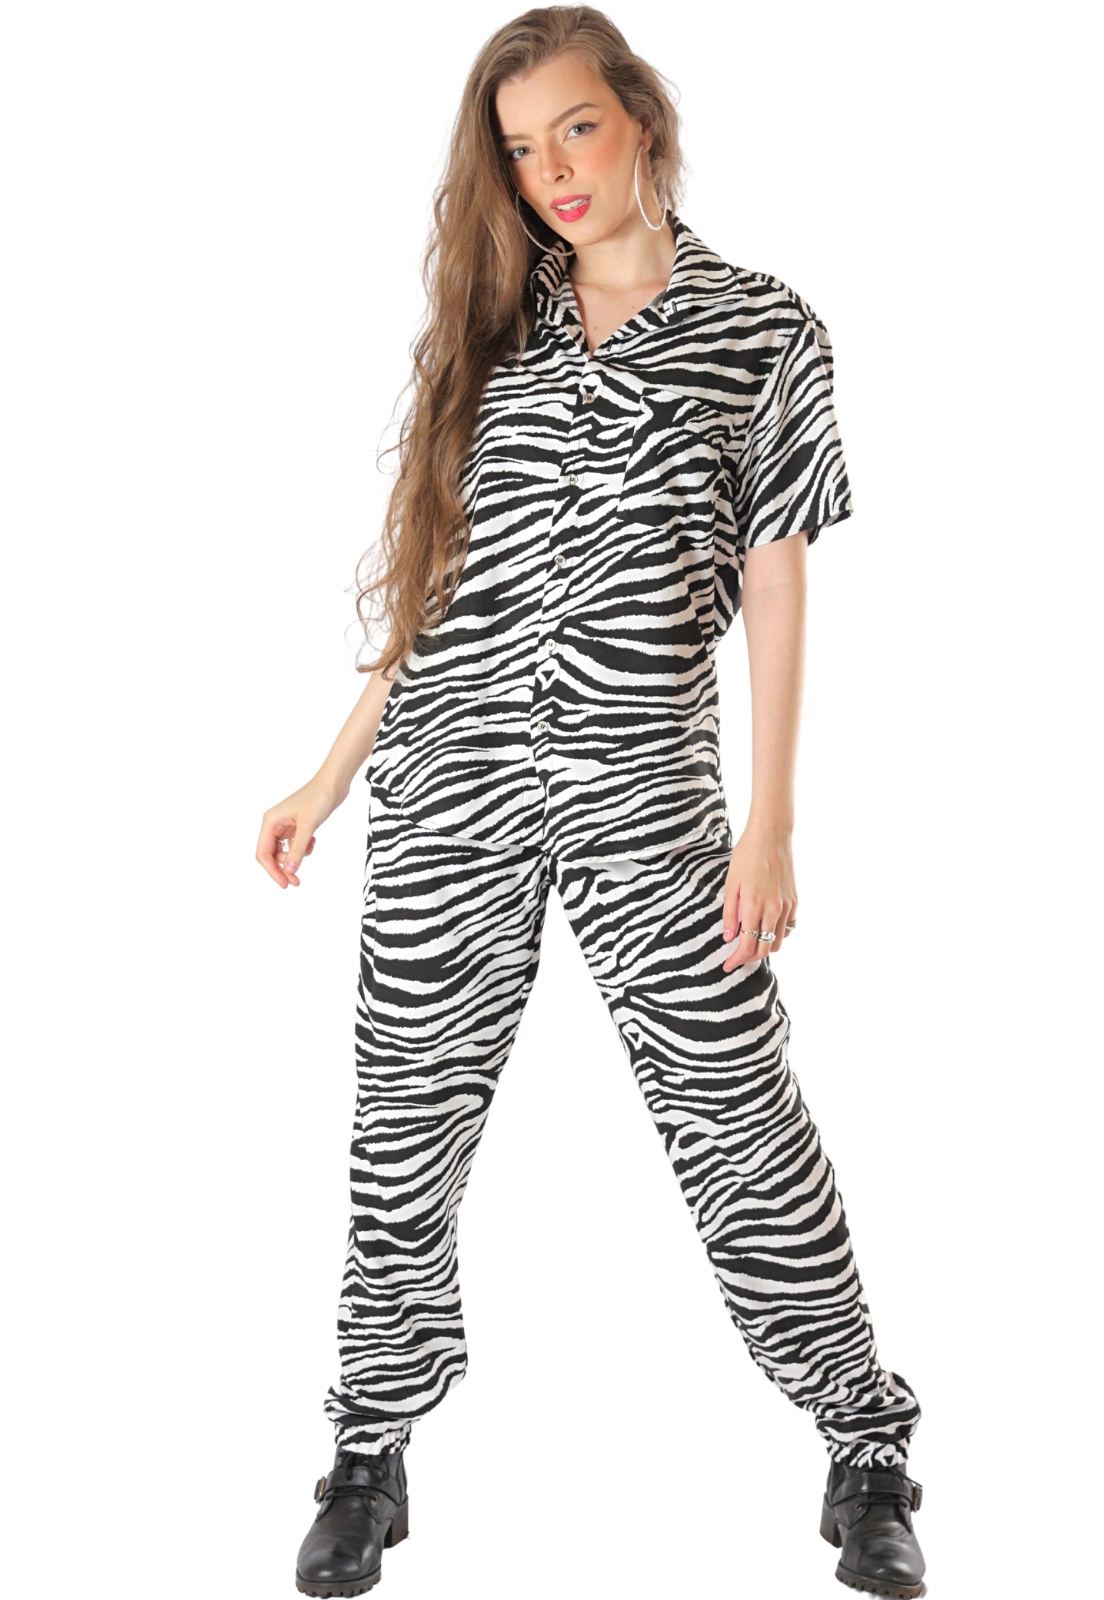 Conjunto Estampado Zebras Animal Print Camisa + Zebra Power